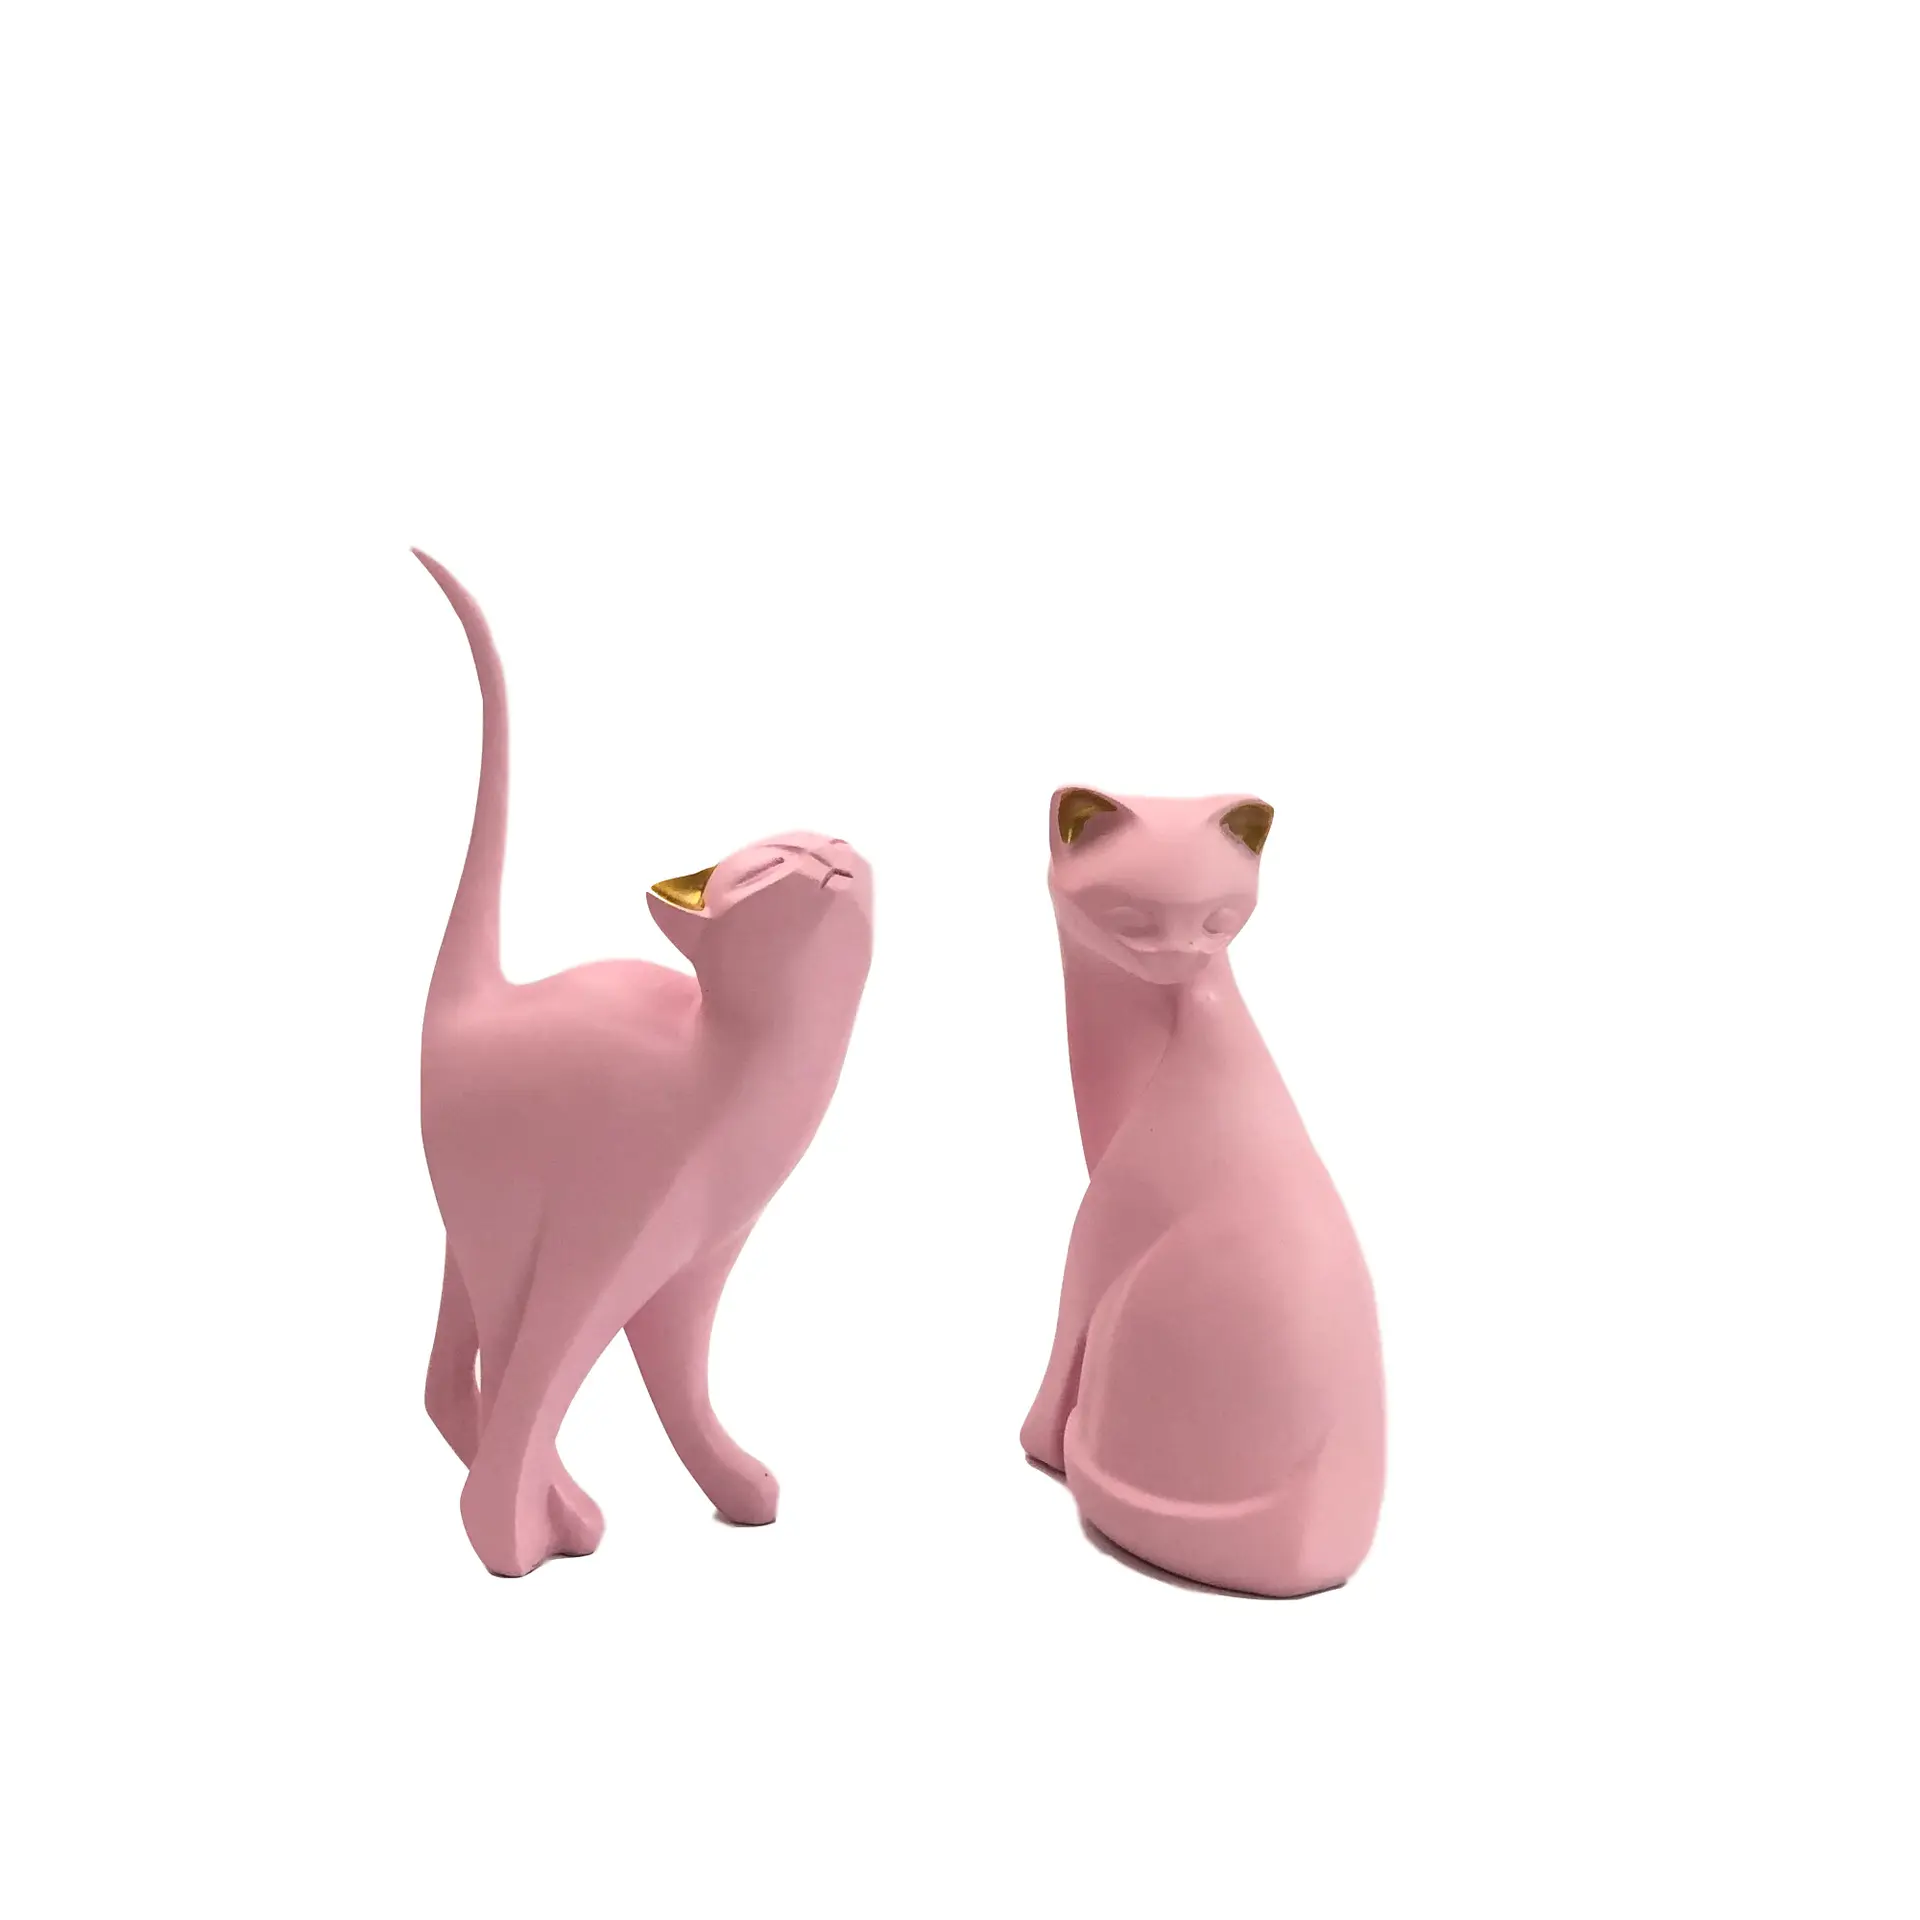 Maßge schneiderte niedliche Tier figur modernen Stil billige rosa Katze Figur Ornament